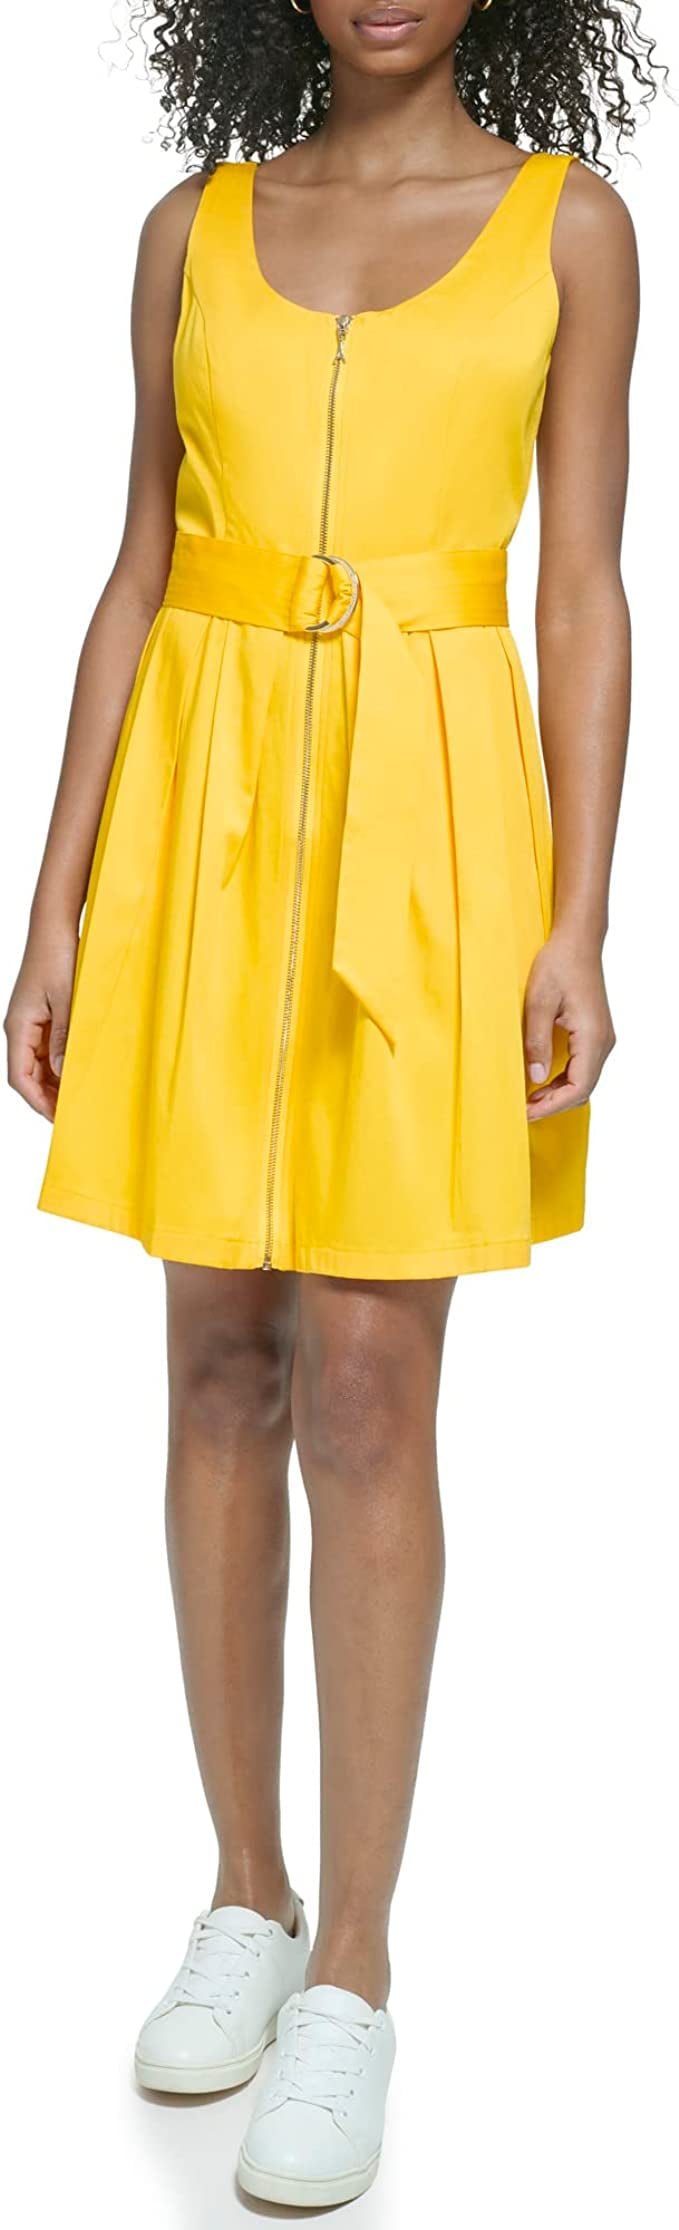 一个亮黄色的衣服从卡尔·拉格菲尔德的巴黎